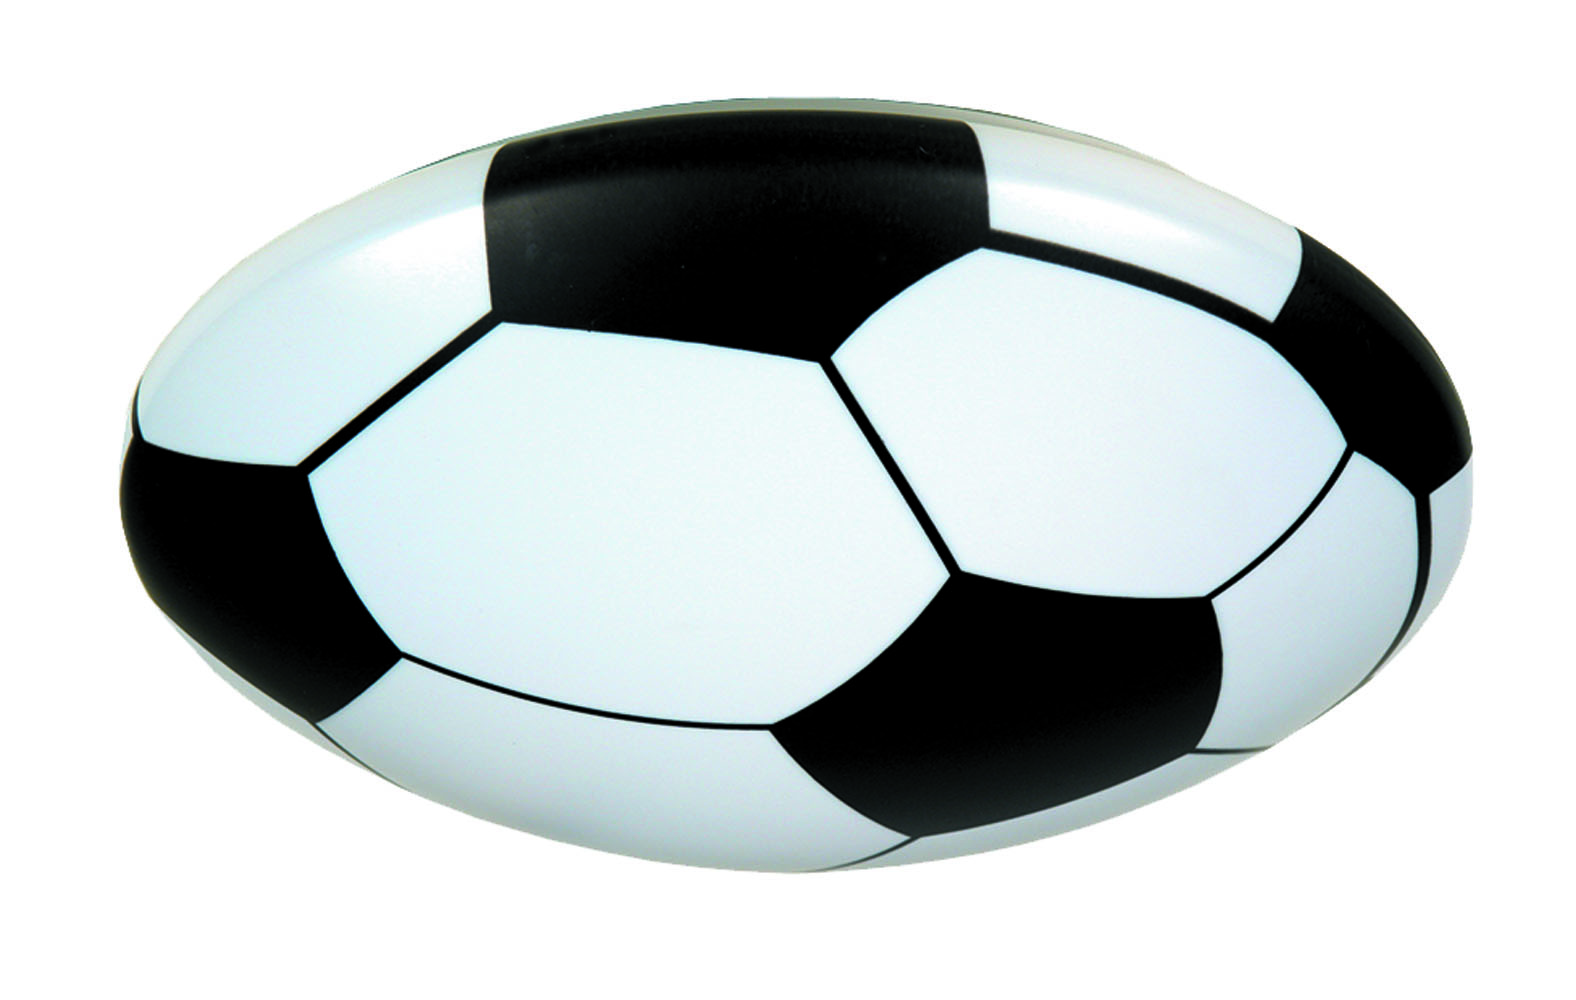 Deckenschale Fussball | Kontor Niermann Standby Lampen